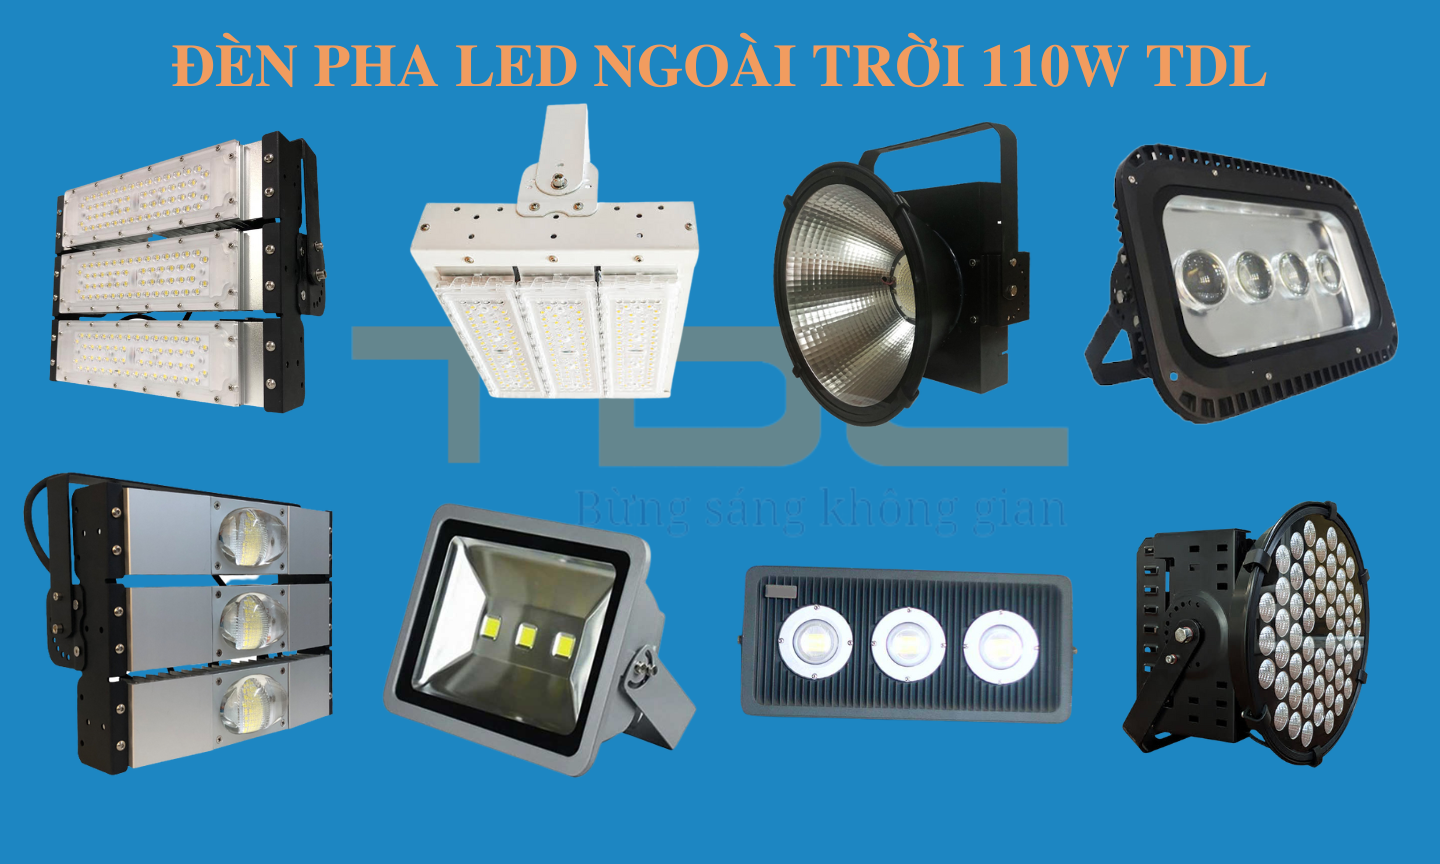 Tổng hợp các mẫu đèn pha LED 110w TDL